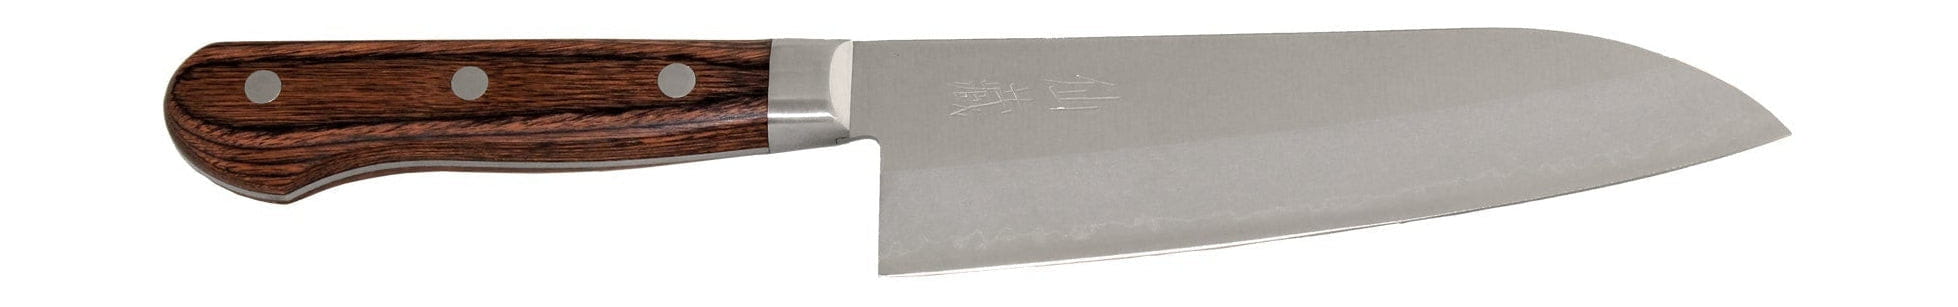 Senzo als 01 Santoku -Messer, 16,5 cm gekleidet